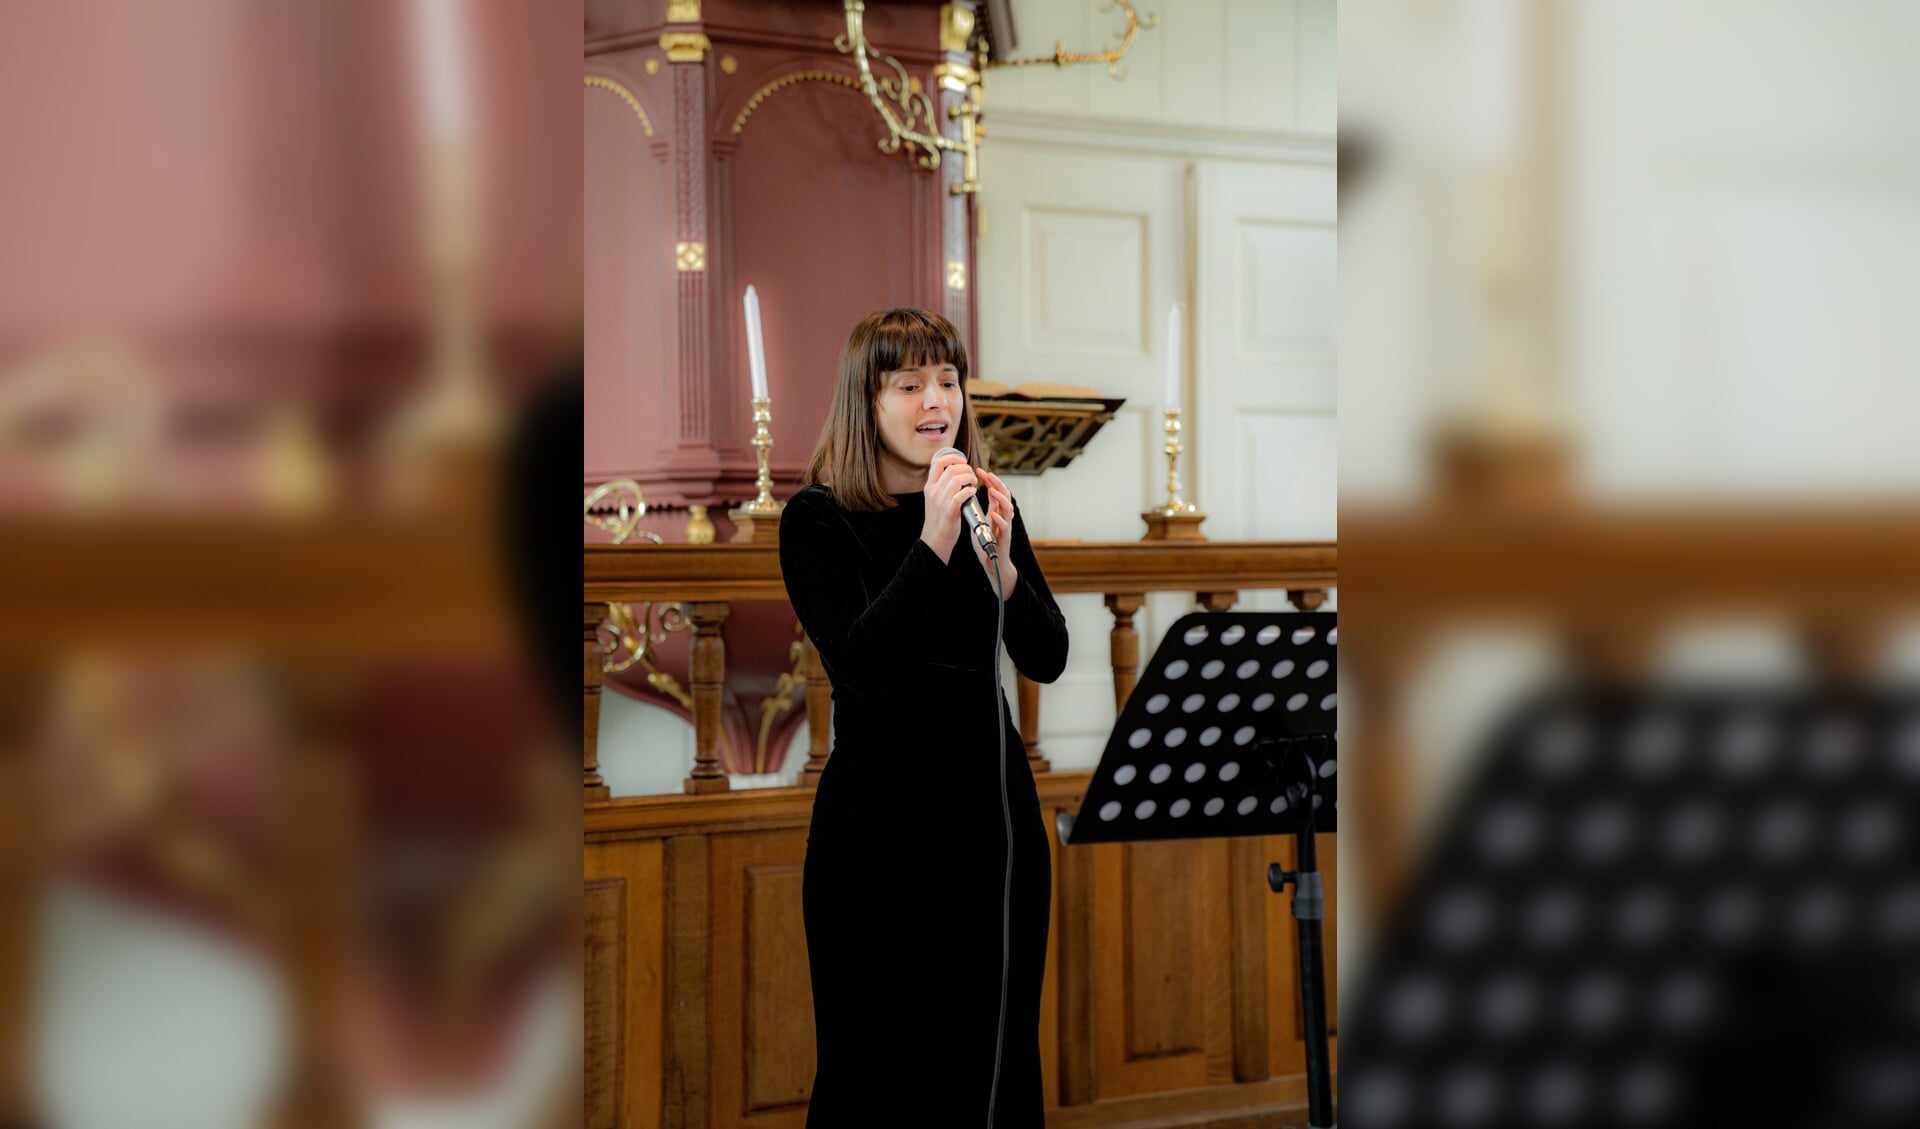 Luíza Spírídon zingt in de dorpskerk in Dirksland.